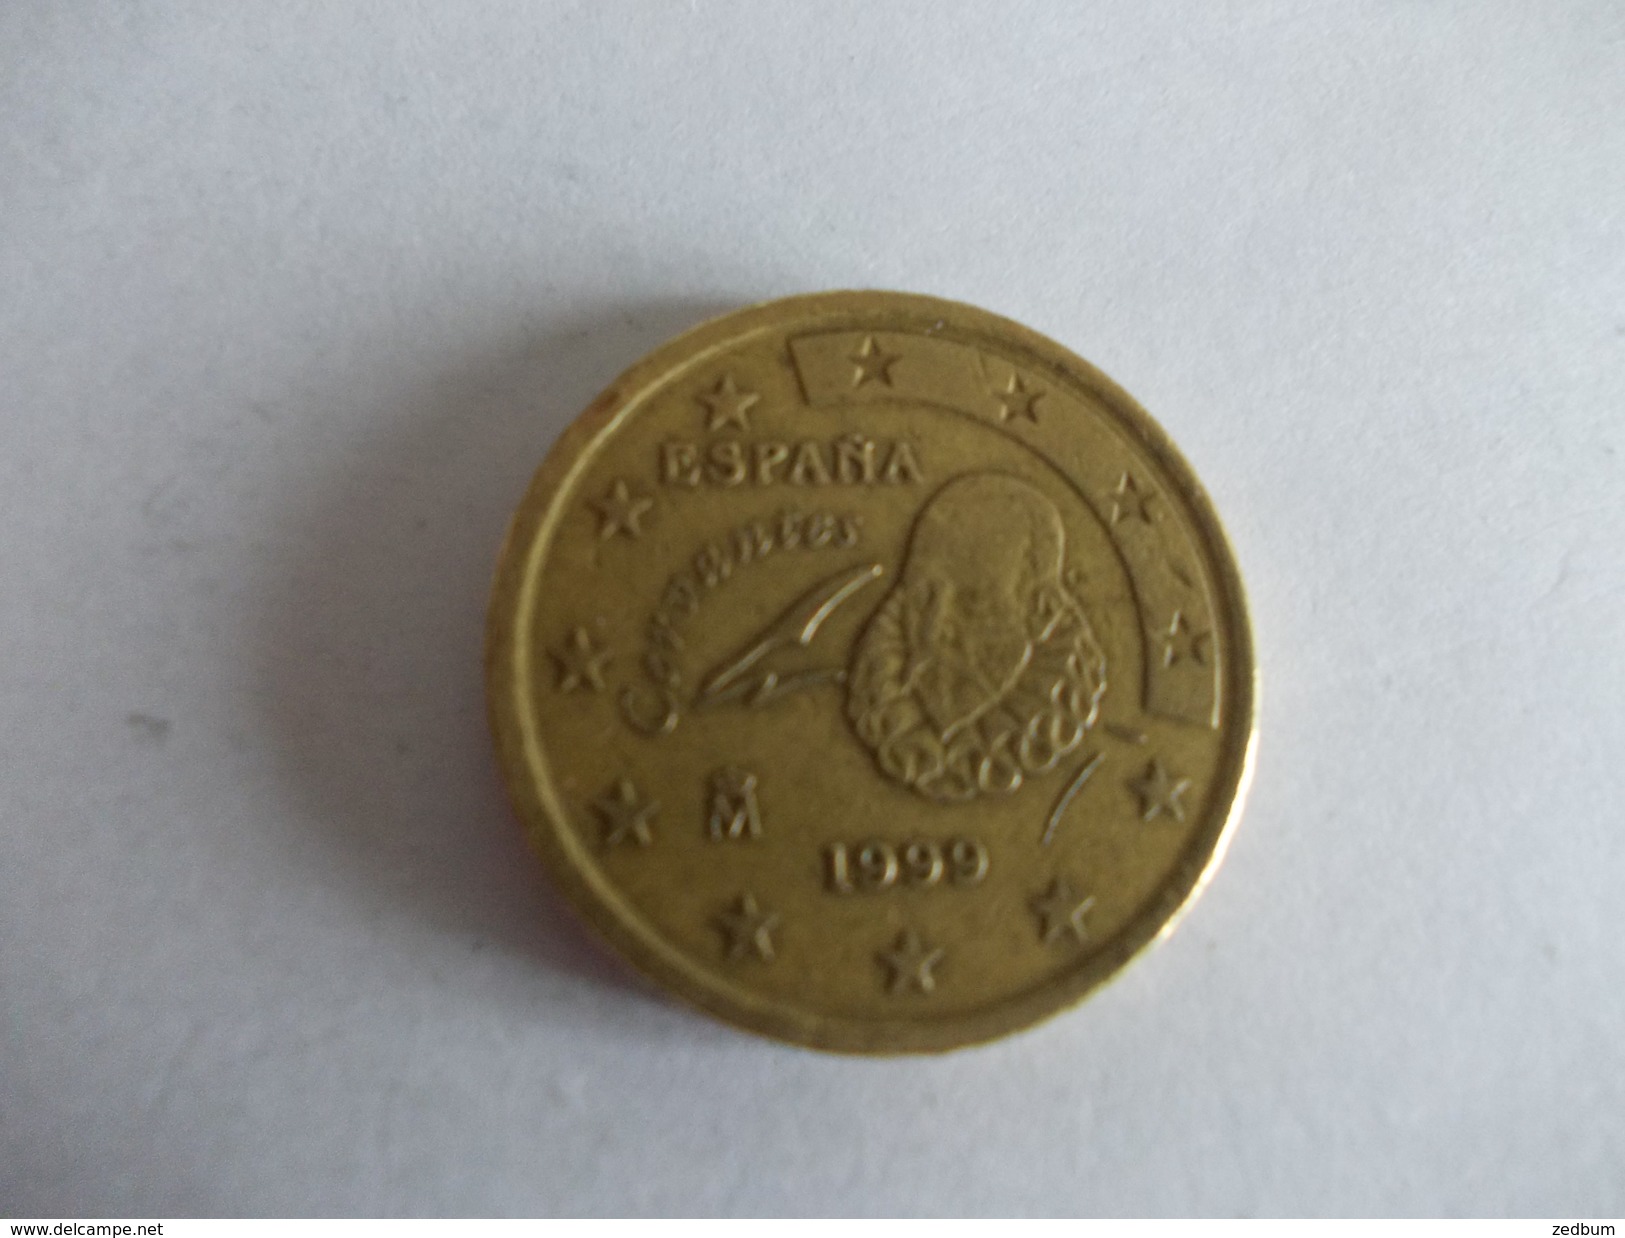 Monnaie Pièce De 50 Centimes D' Euro De Espagne Année 1999 Valeur Argus 1 &euro; - Spain